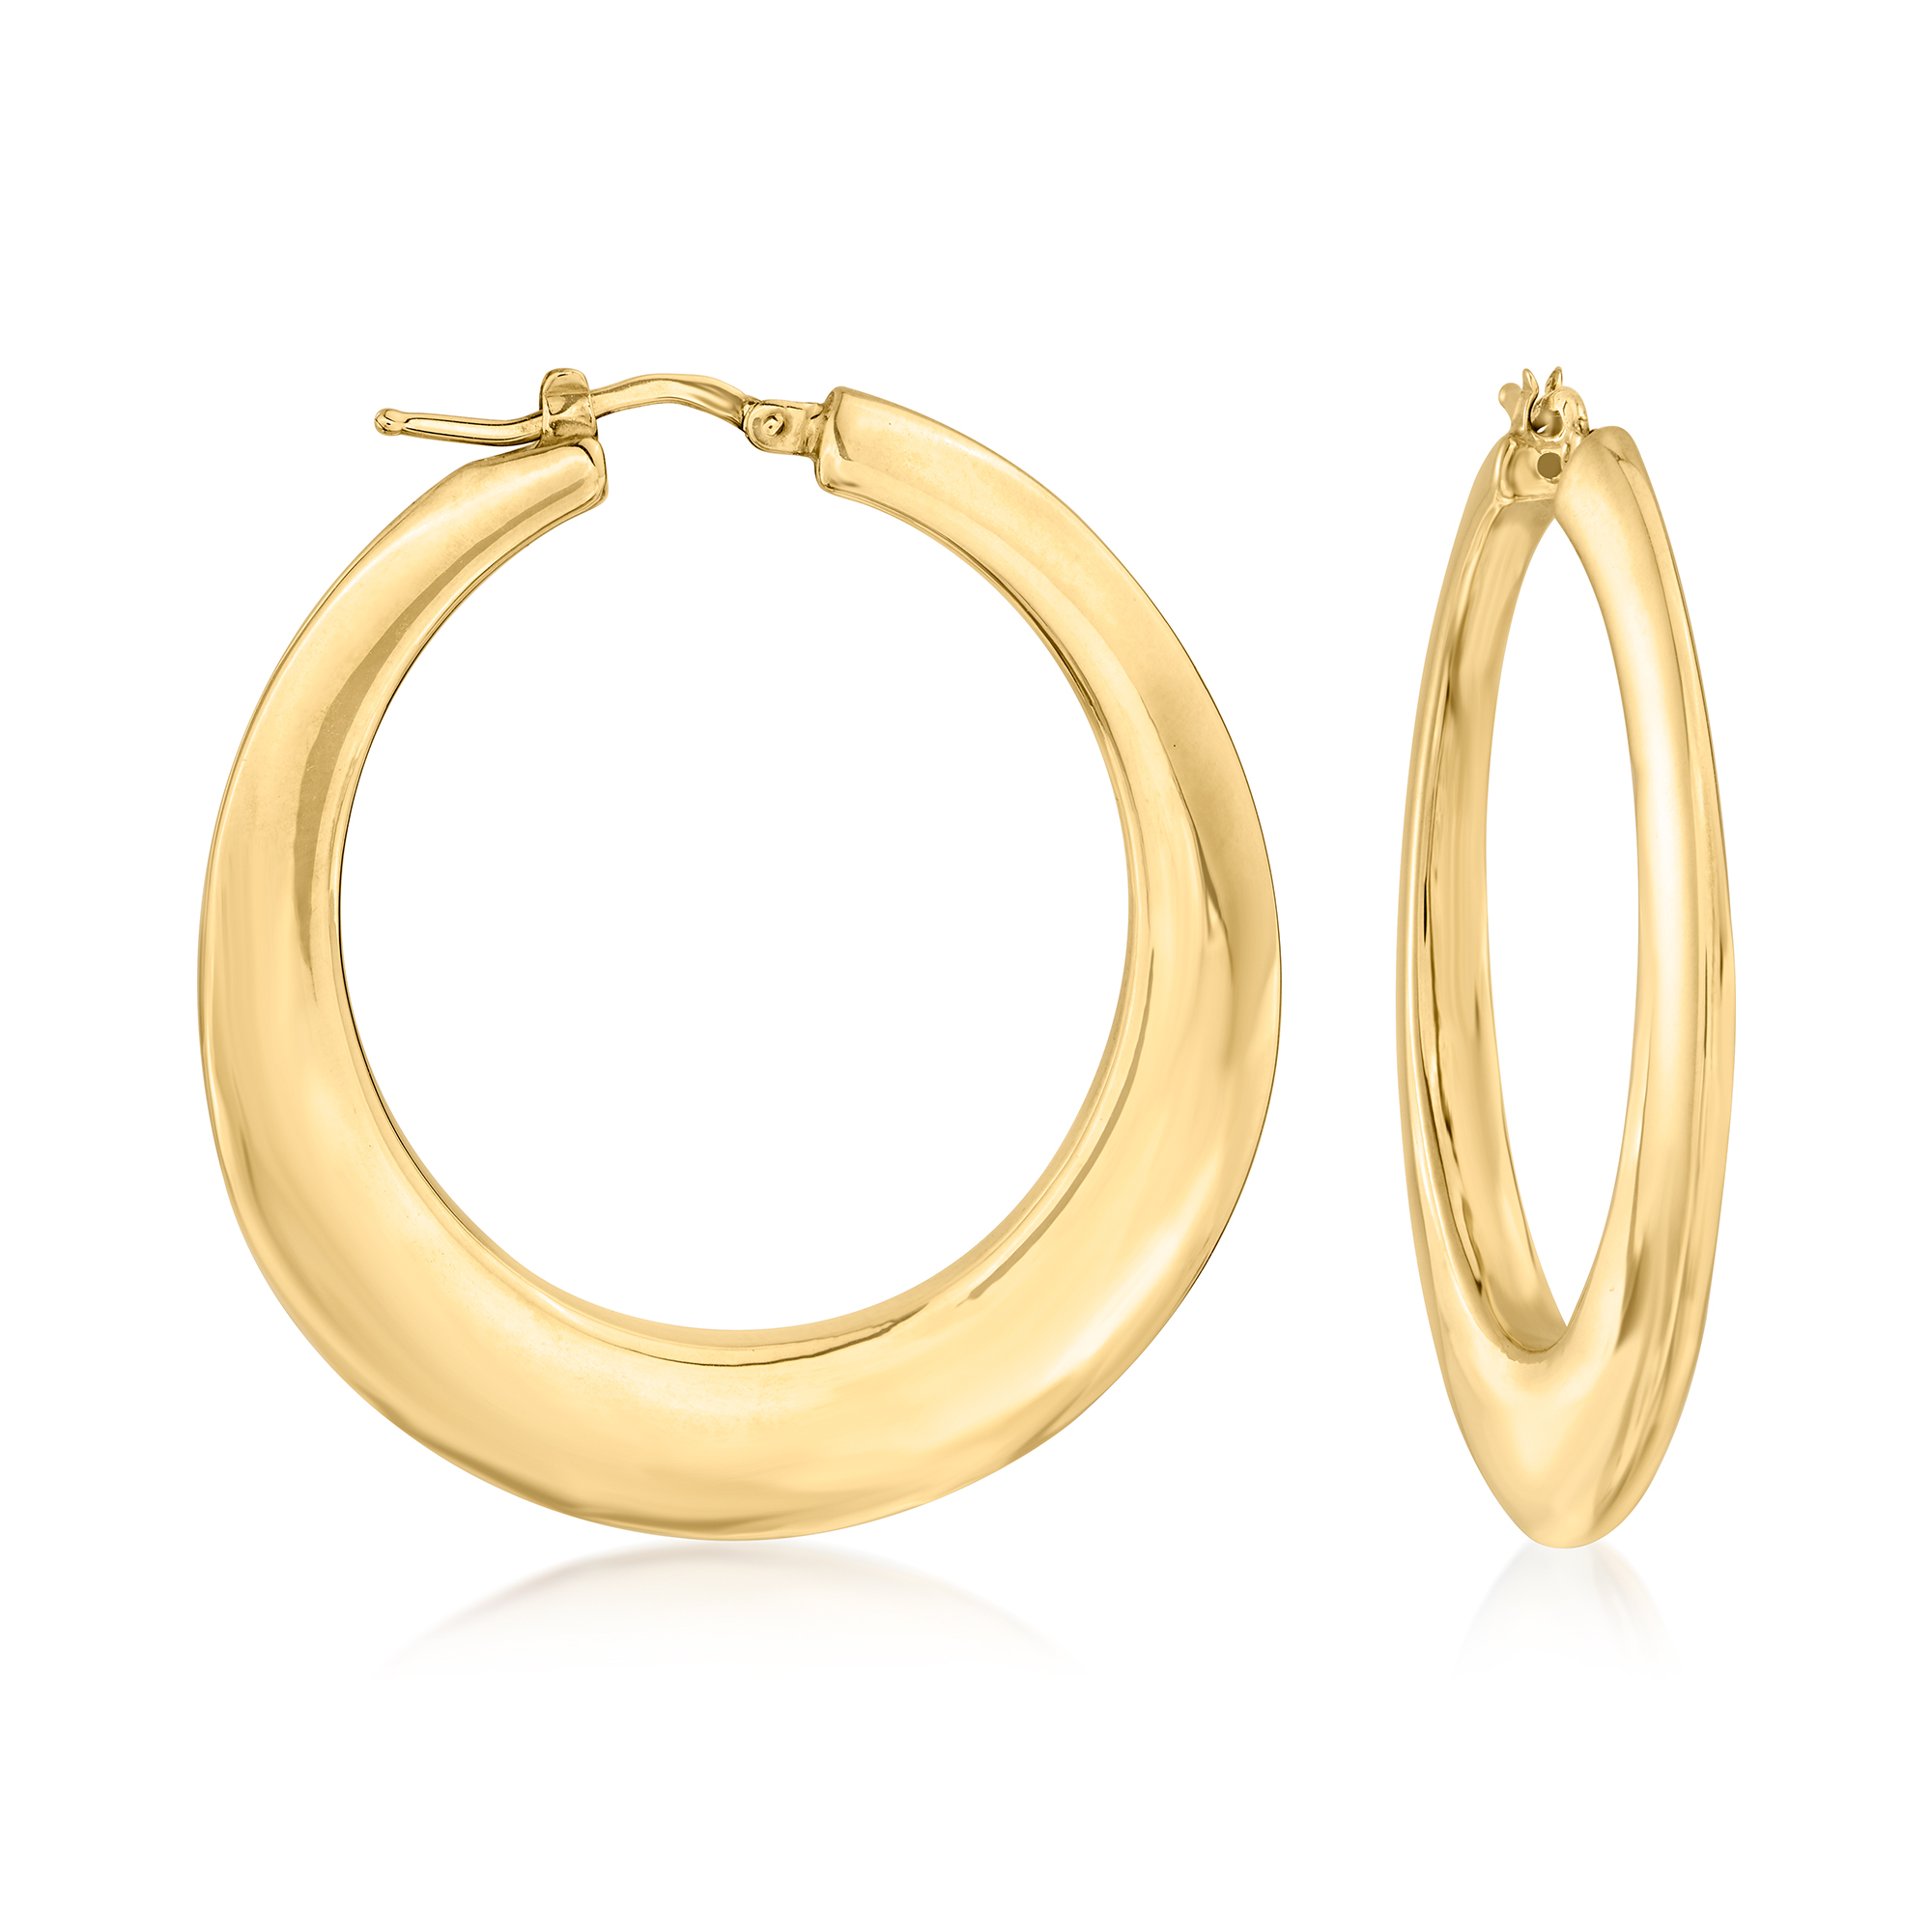 Italian 14kt Yellow Gold Hoop Earrings. 1 3/4" | Ross-Simons